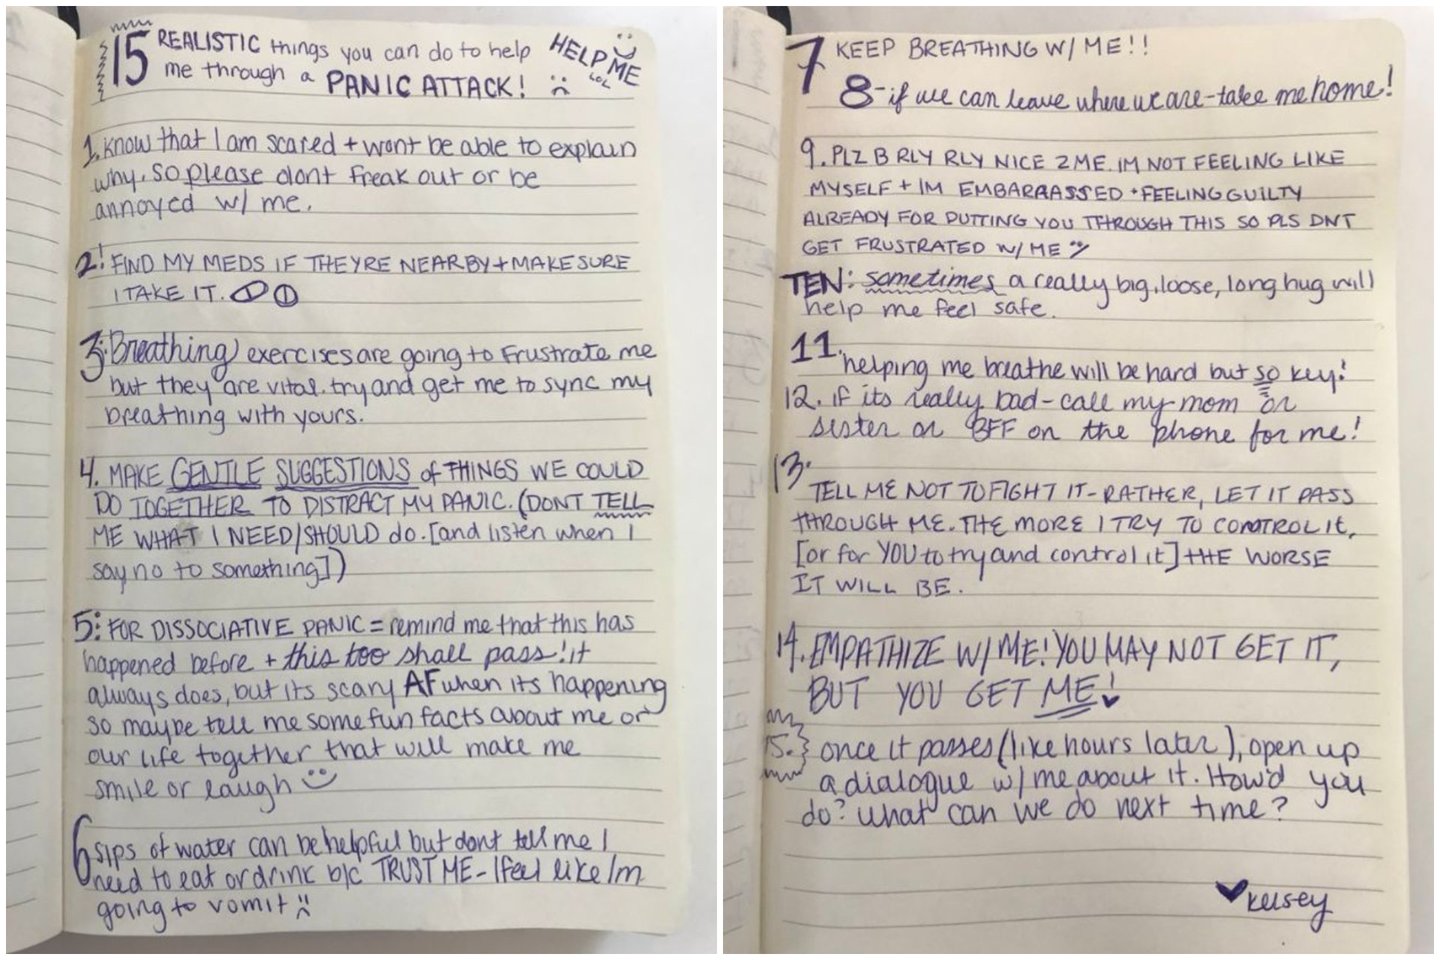  Kelsey Darragh, sudarė 15 punktų sąrašą, kad padėtų savo vaikinu suprasti, ką patiria ir kaip jai galima pagelbėti ištverti panikos priepuolius.<br> Soc. tinklų nuotr.